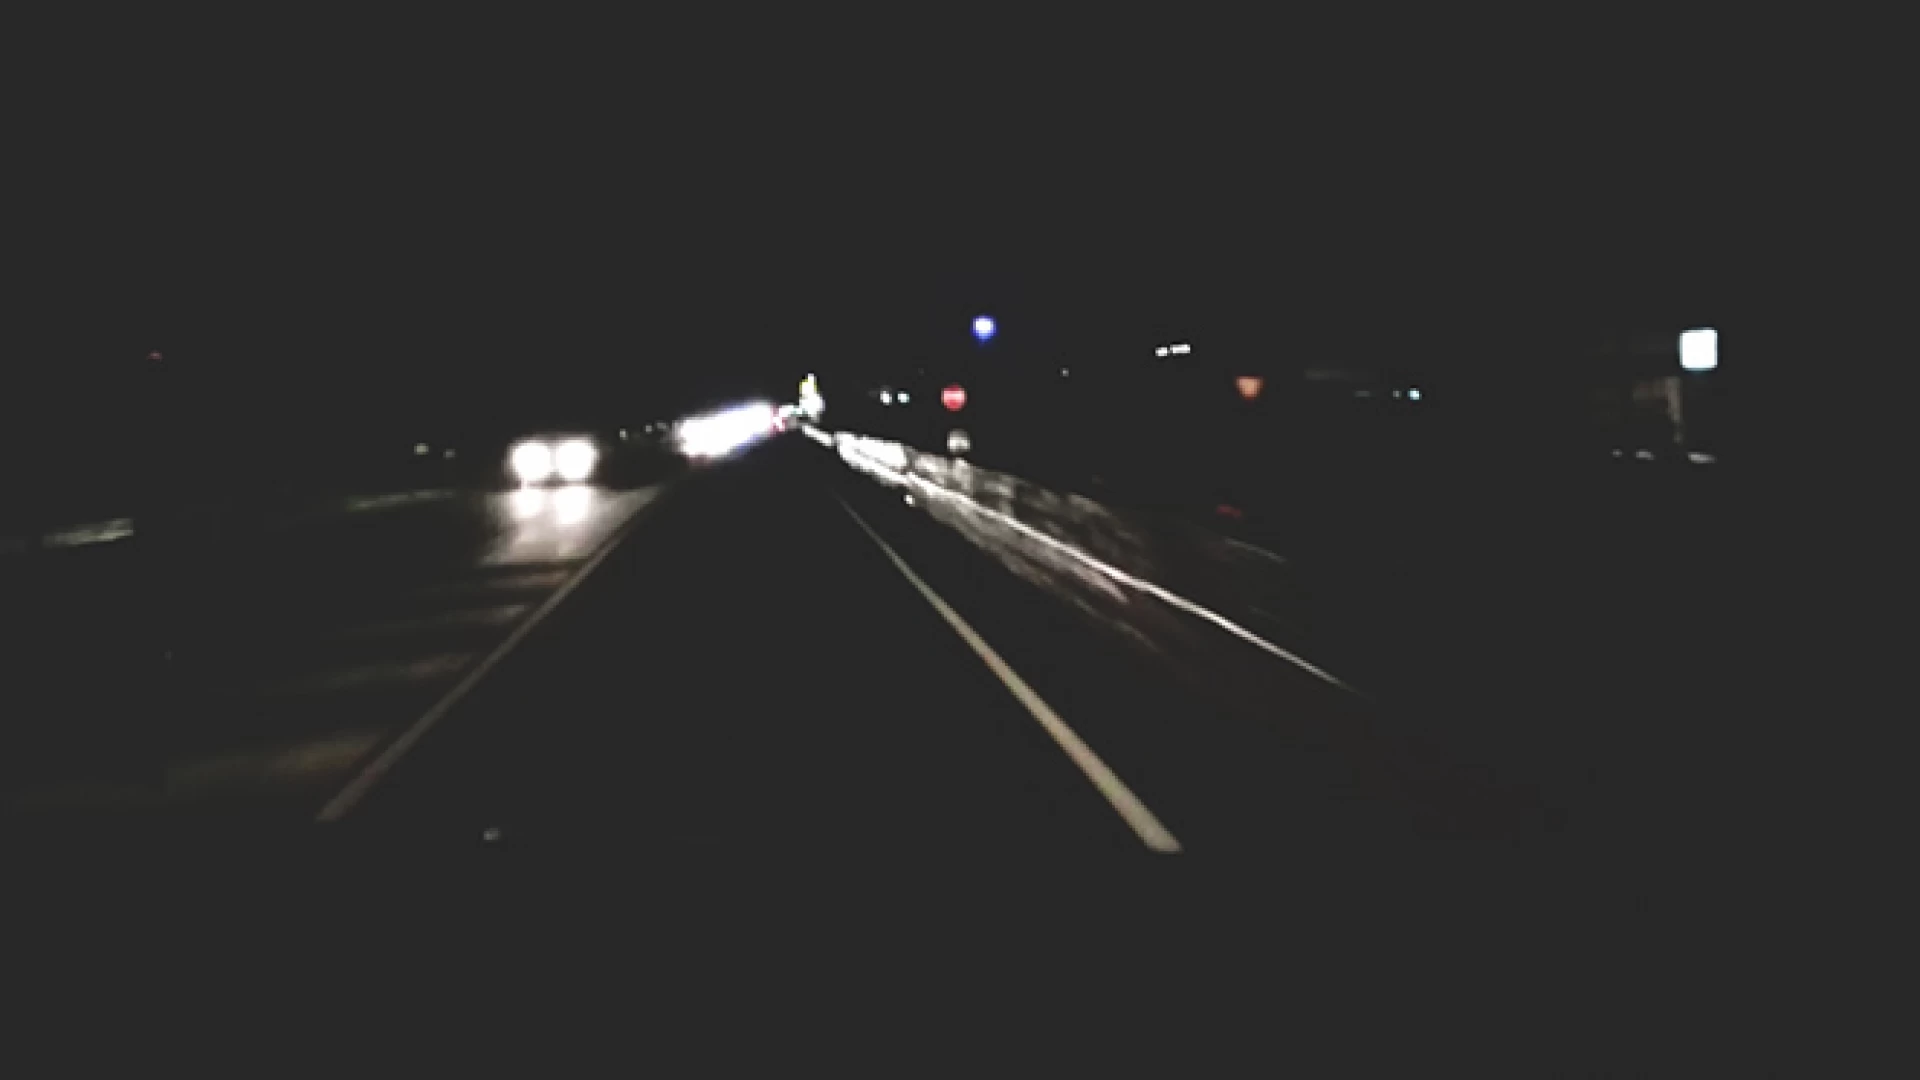 Macchia d'Isernia: statale 17 al buio e pali dell'illuminazione pubblica spenti. Il nostro video servizio